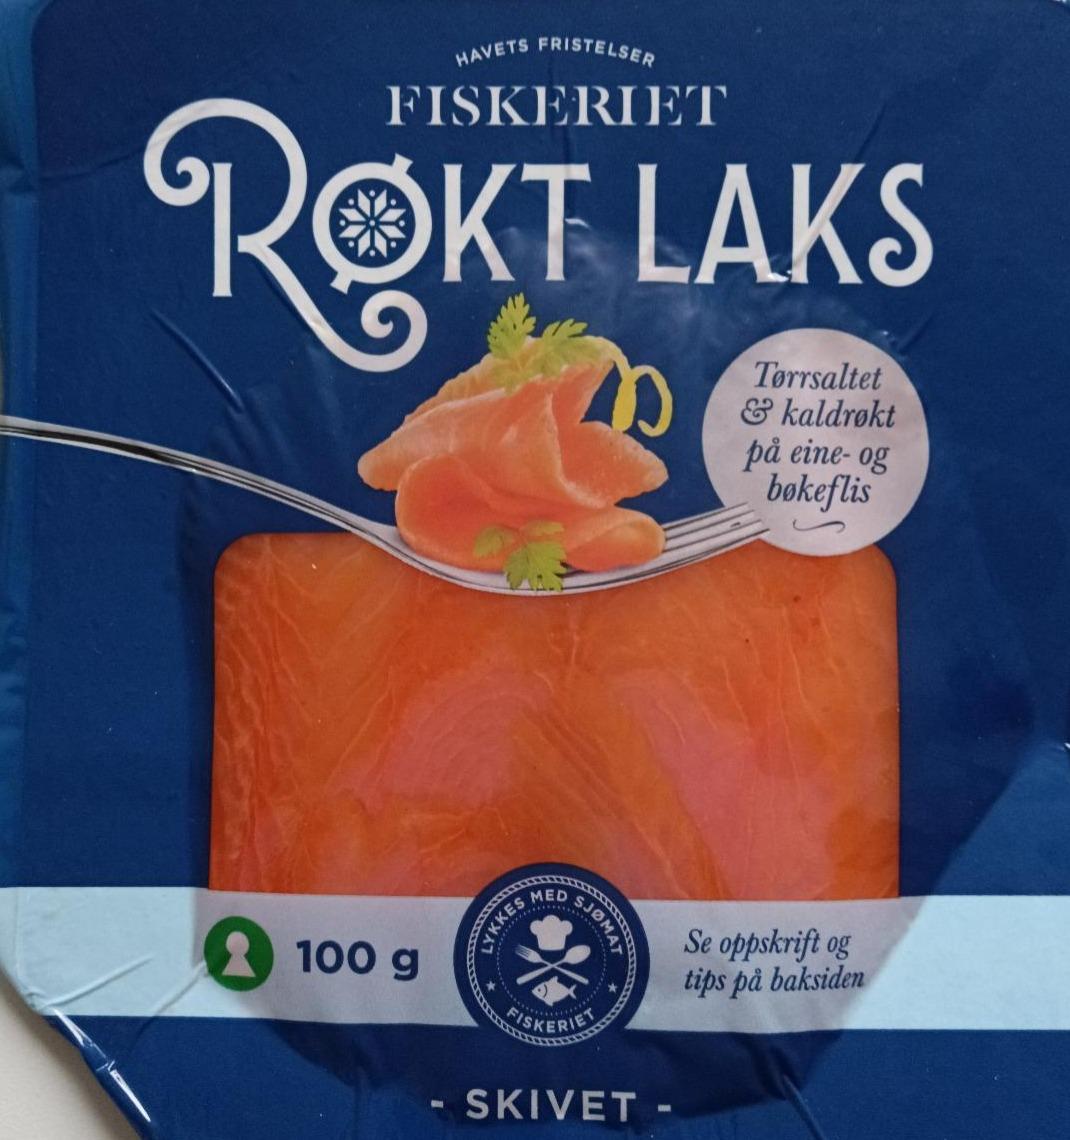 Фото - Røkt Laks Fiskeriet